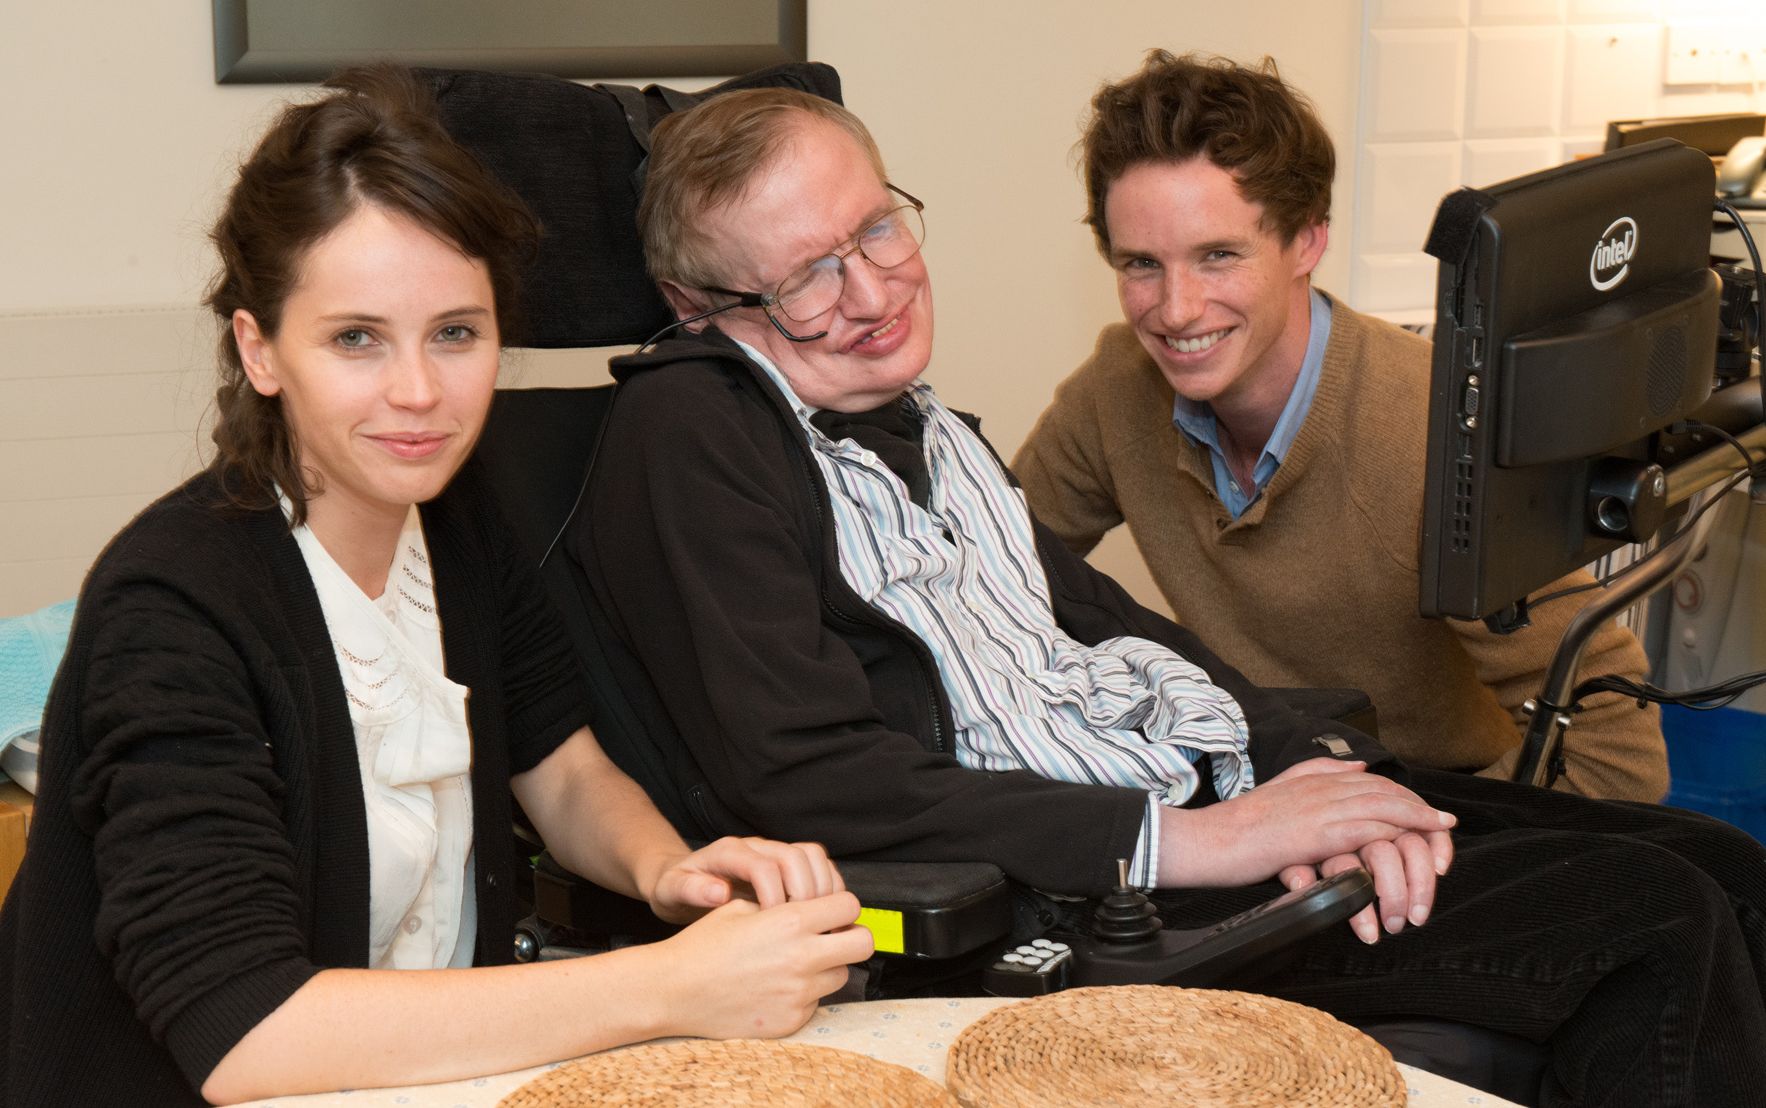 Eddie Redmayne and Felicity Jones meet Stephen Hawking